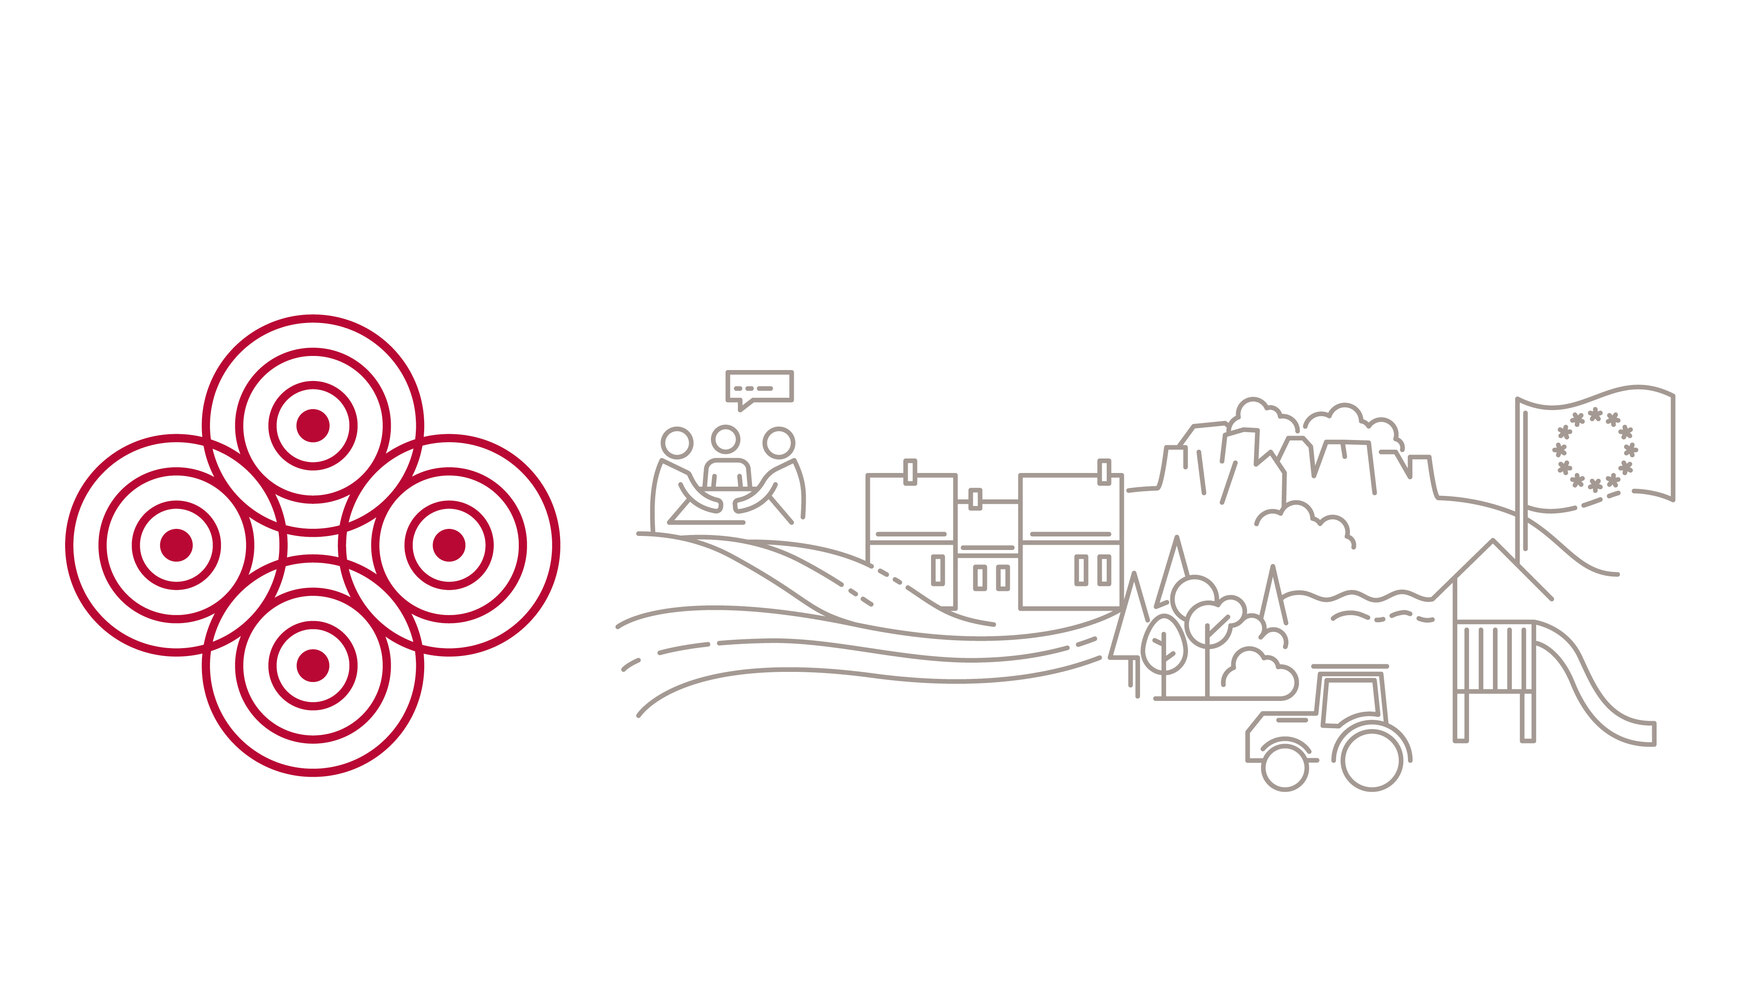 zu sehen ist das Logo des ländlichen Raums in Sachsen: Vier konzentrische Kreise. Daneben Elemente des ländlichen Raums aus der Natur und Dörfern.